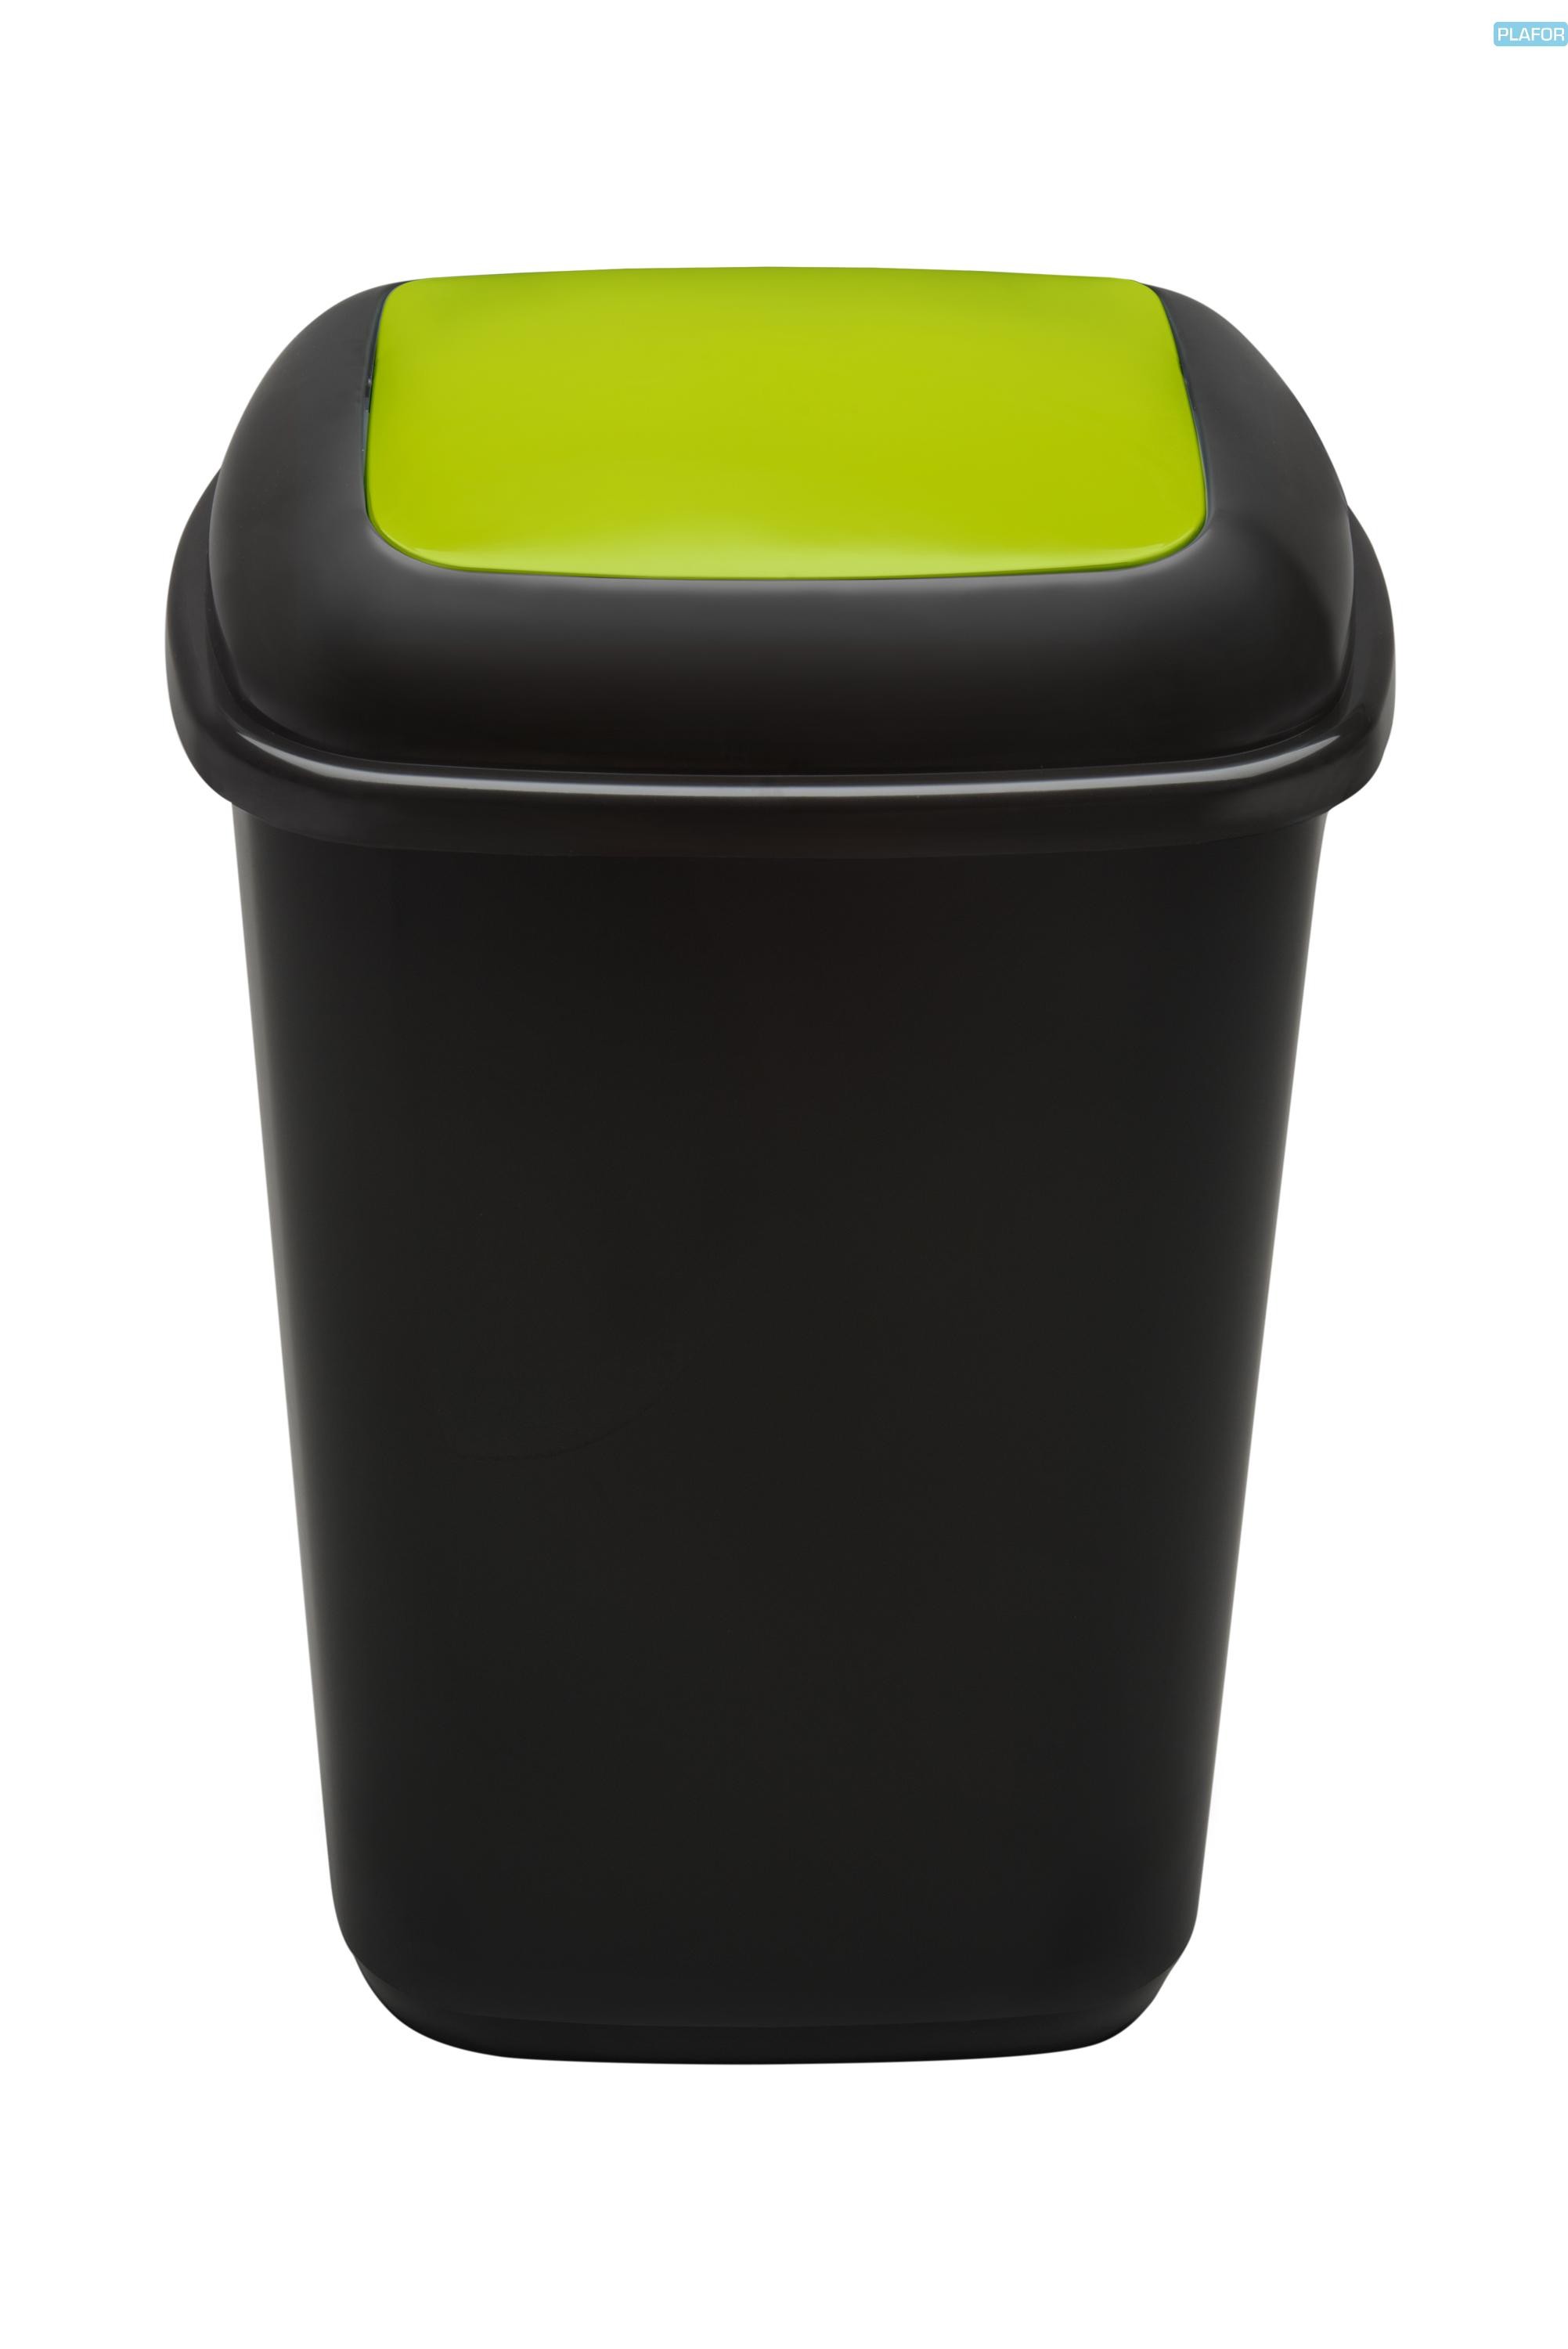 Cos plastic reciclare selectiva, capacitate 45l, PLAFOR Quatro - negru cu capac verde - sticla